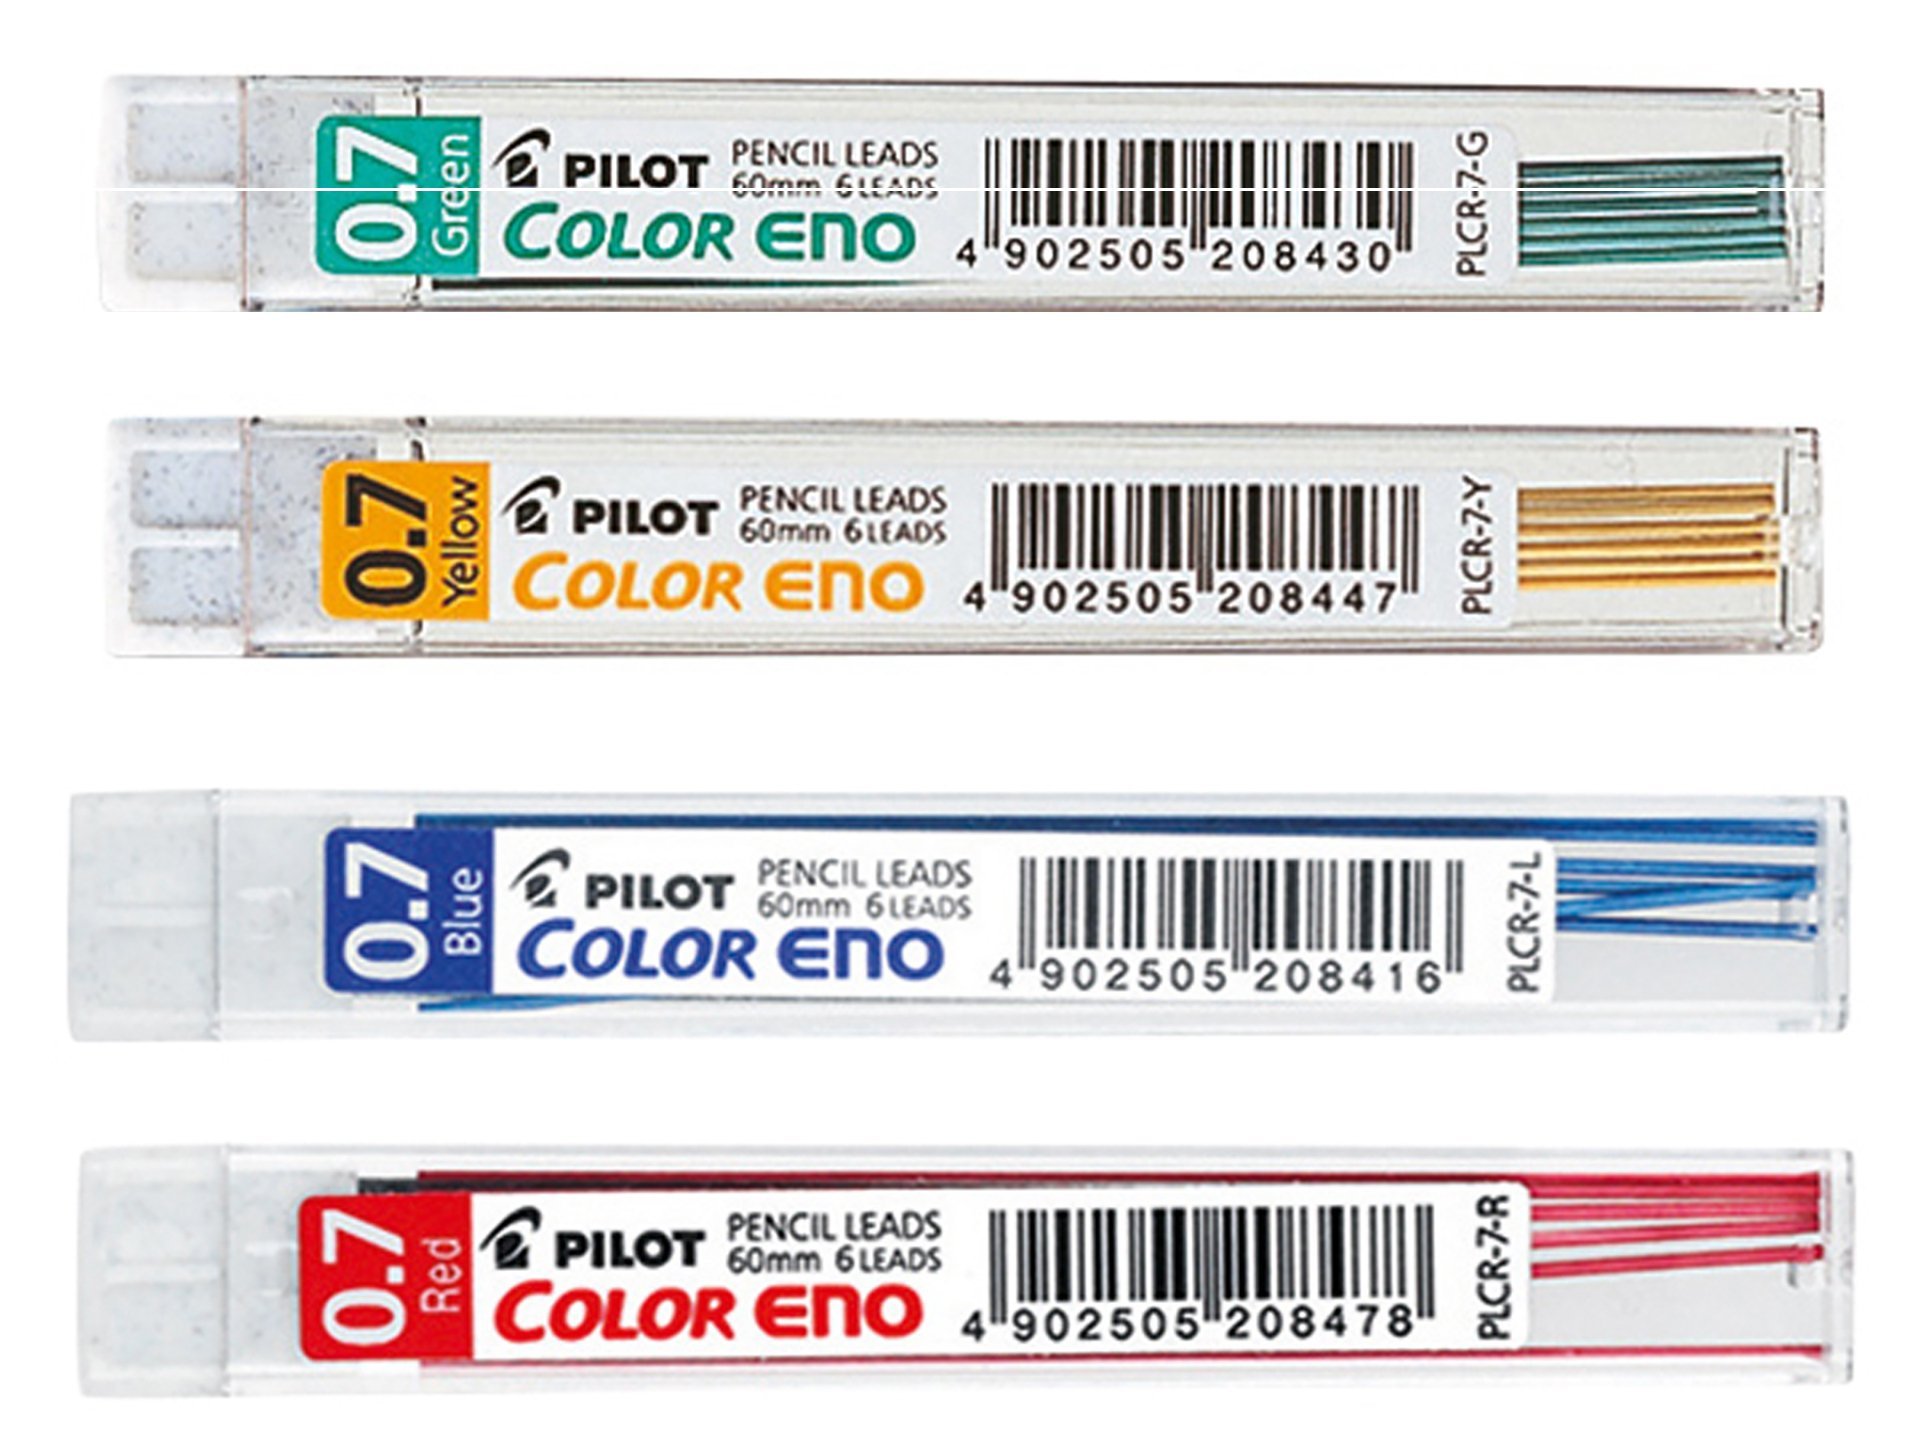 PLCR-7-O 3 x tubes Pilot Color Eno 0.7mm Mechanical Pencil Leads Orange